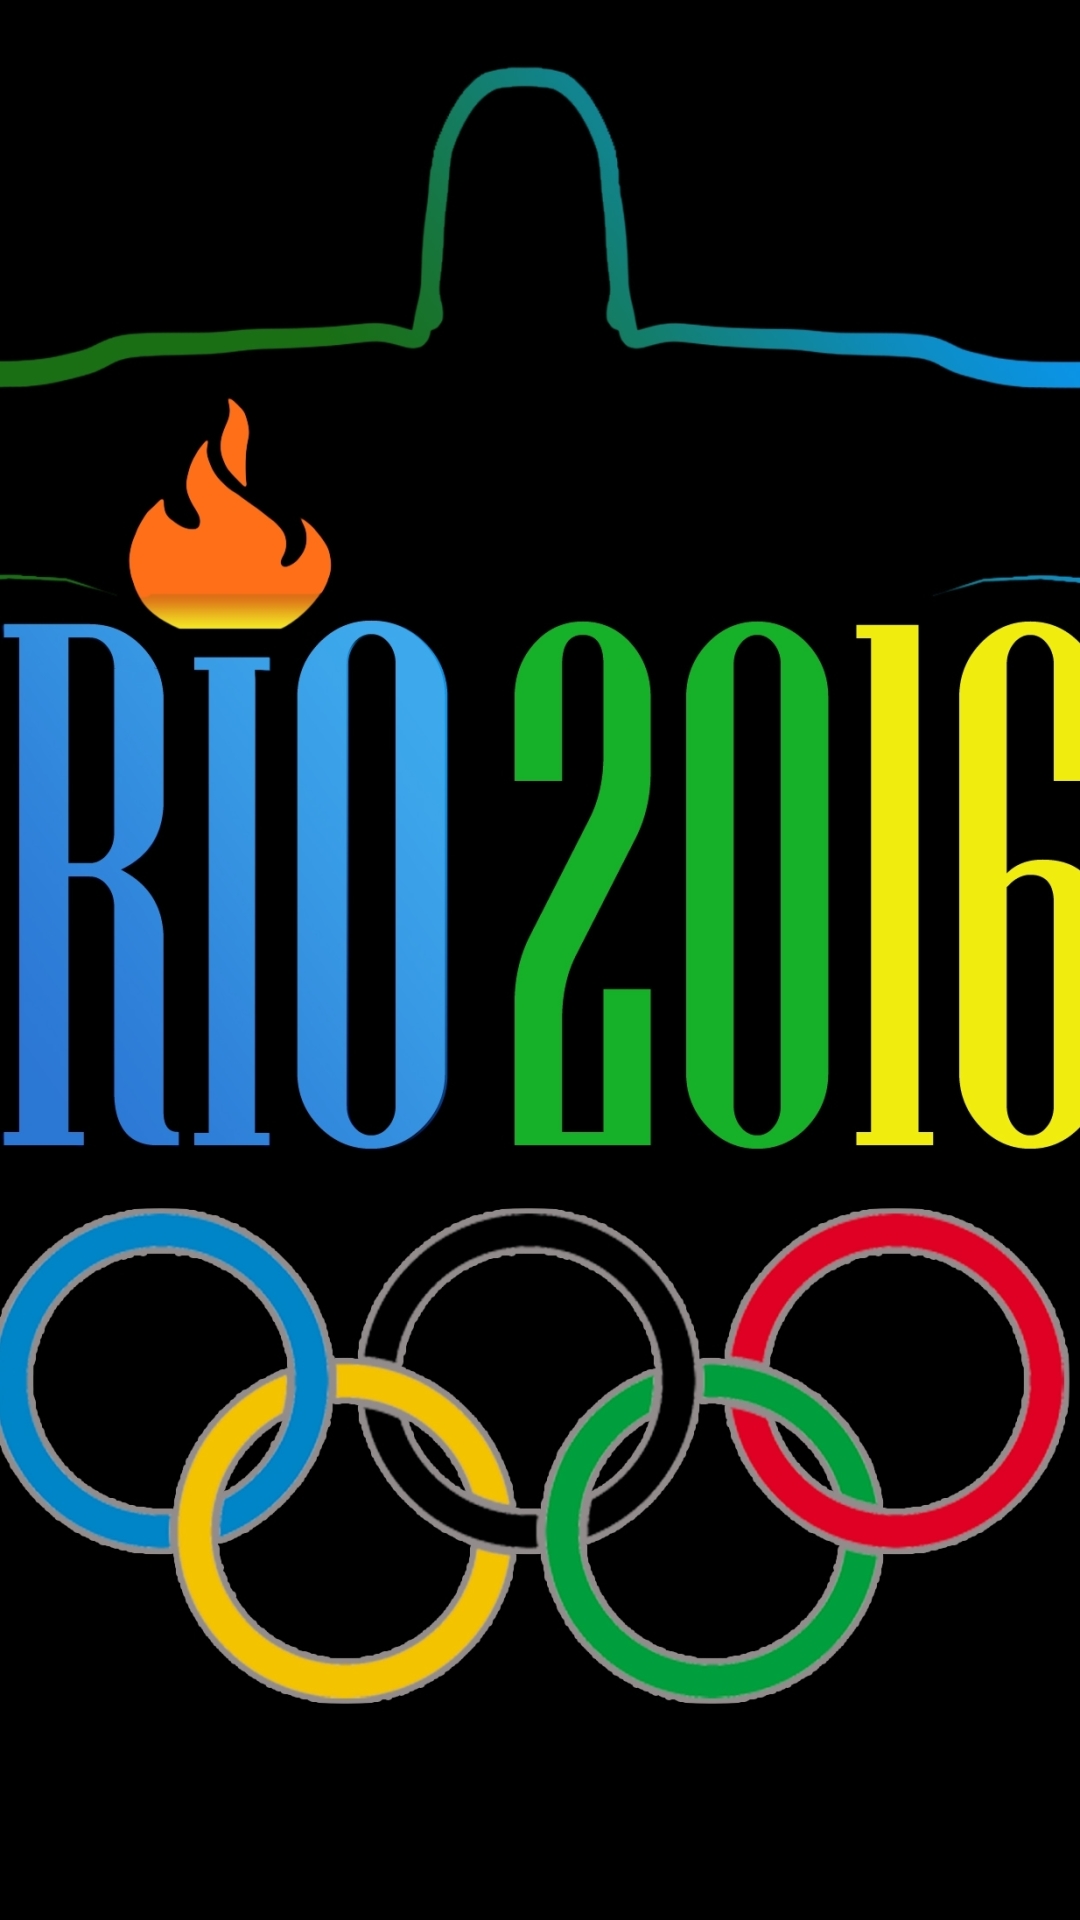 1250678 скачать обои виды спорта, летние олимпийские игры в рио де жанейро 2016 г - заставки и картинки бесплатно